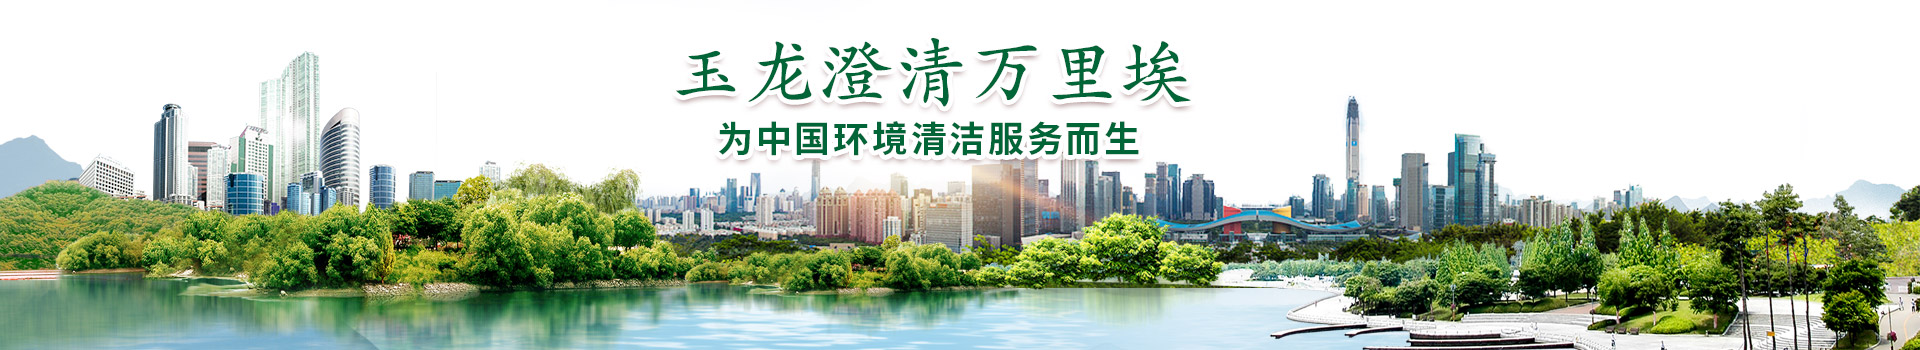 关于Manbetx万博亚洲官网-为中国环境清洁服务而生